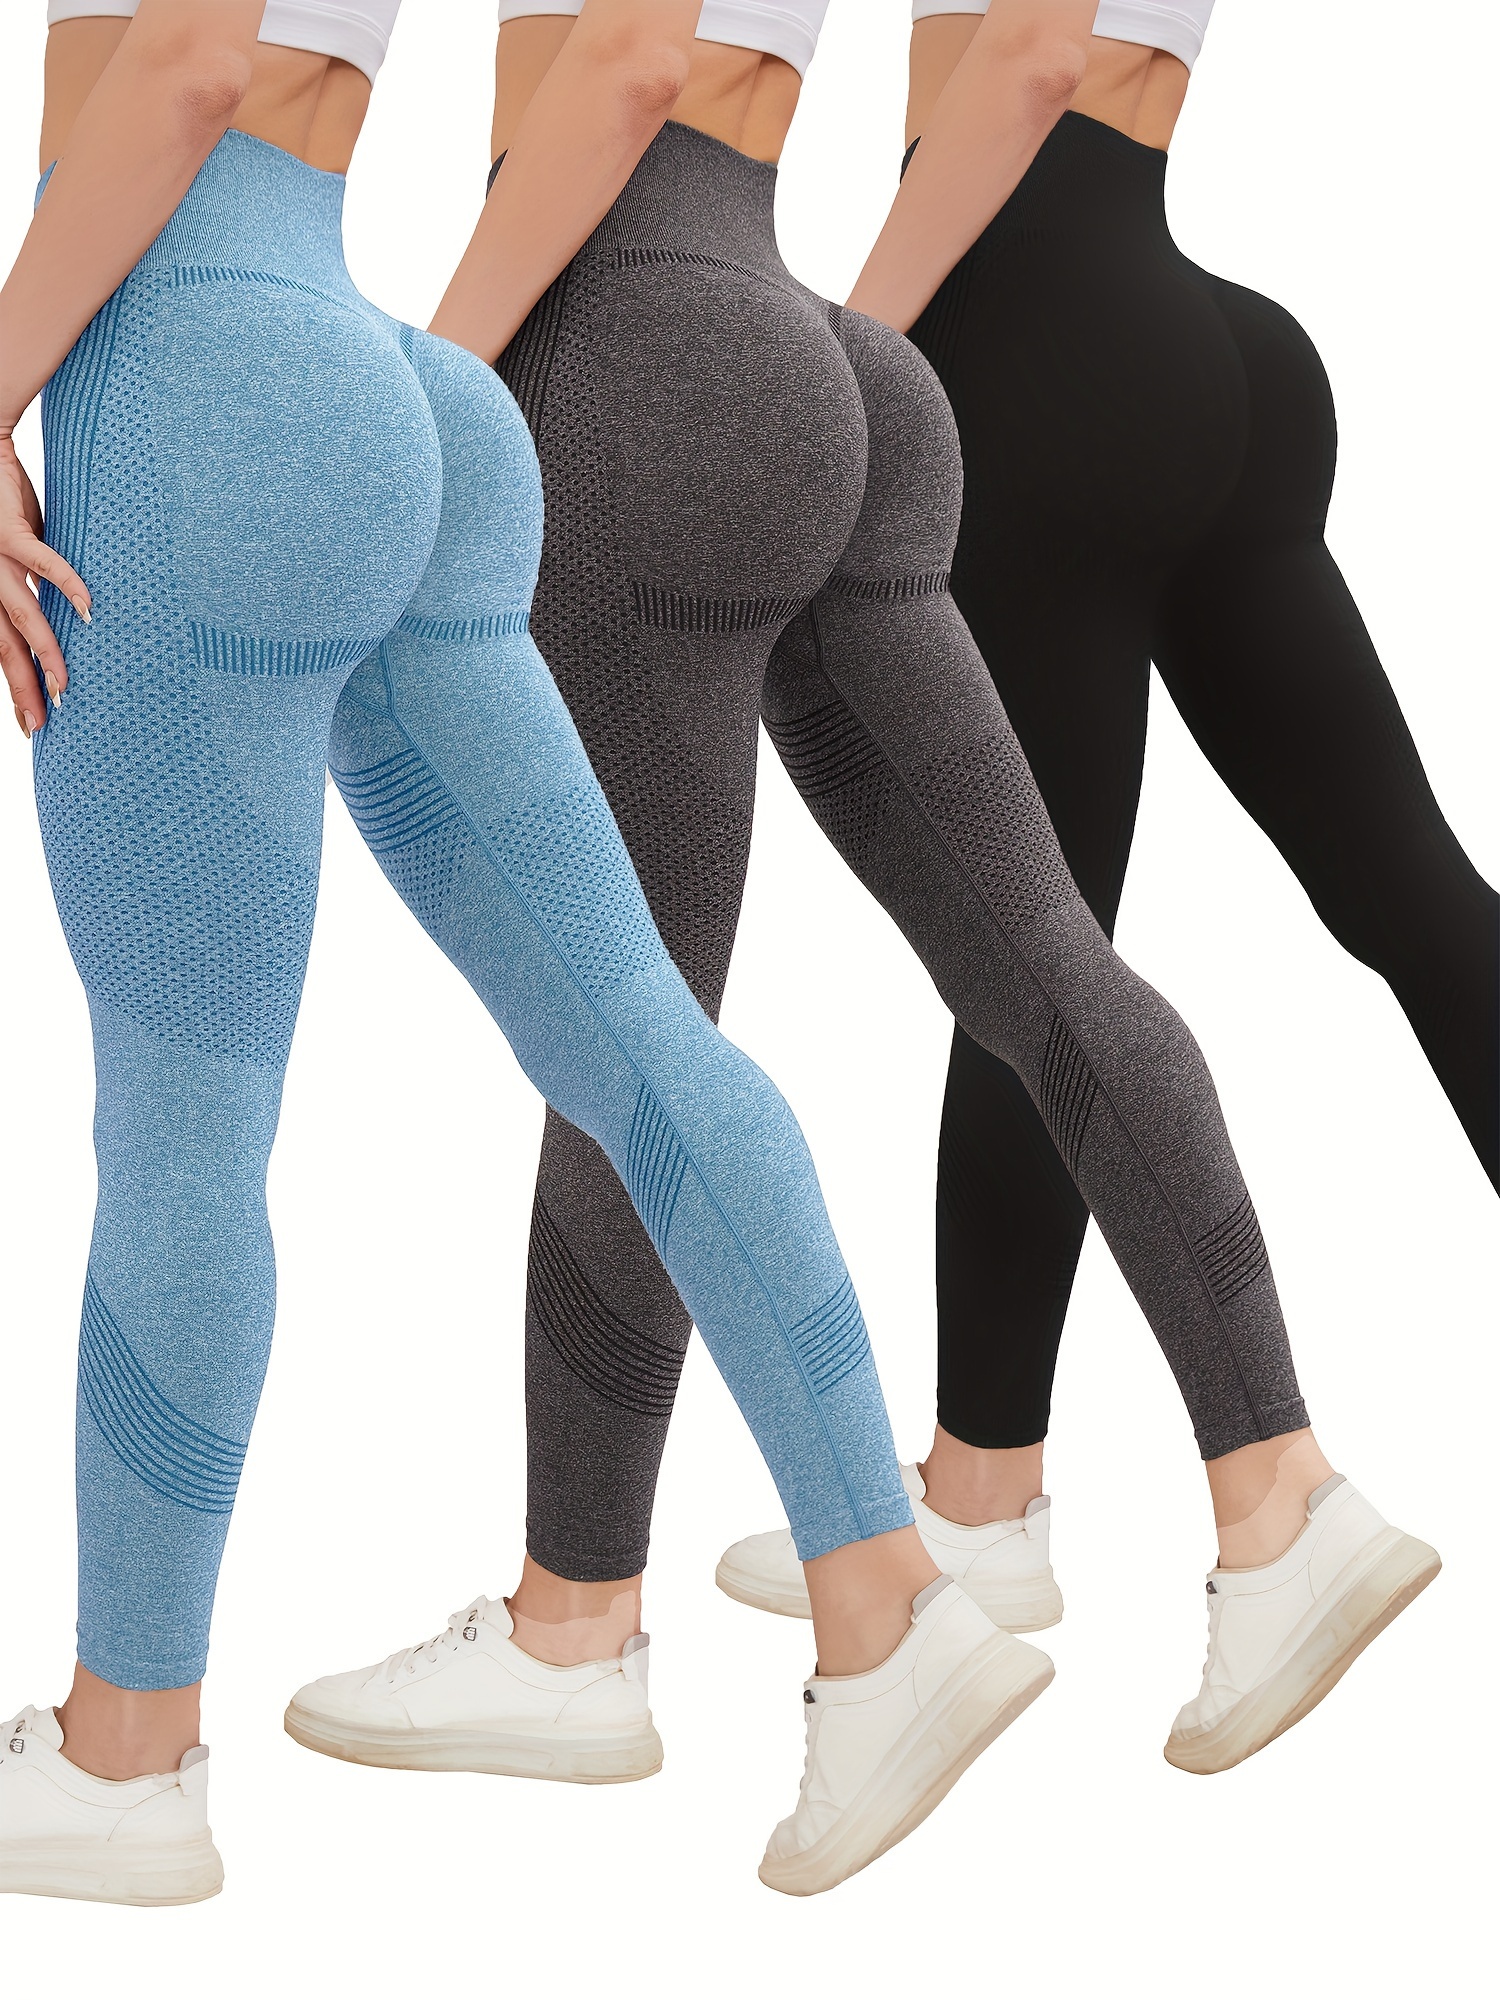  Women Butt Lifting Workout Leggings Butt Lifting Leggings for Women  Women High Waist Yoga Pants High Waisted (Black, S) : Sports & Outdoors